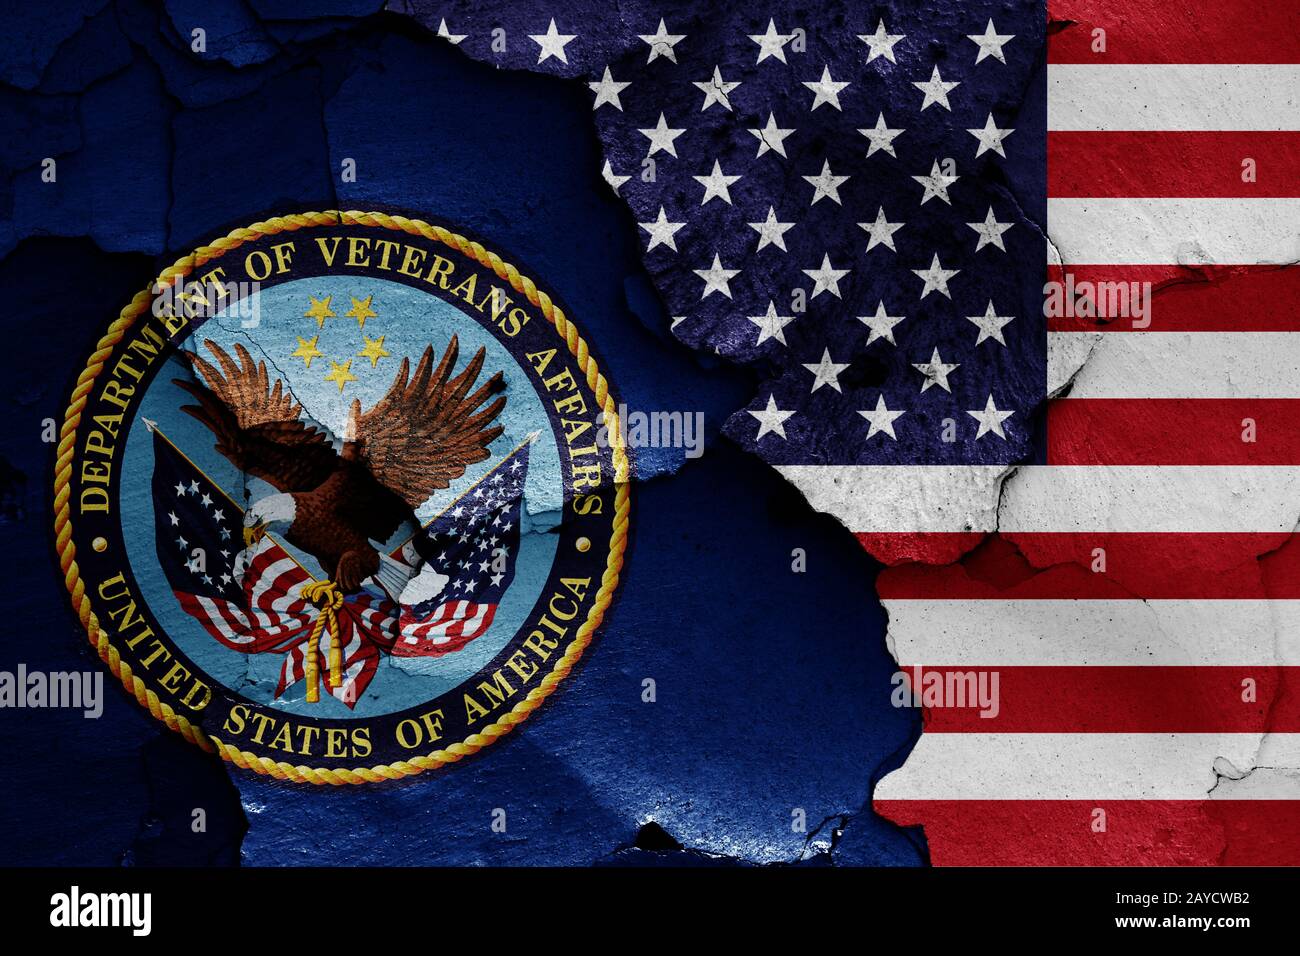 Bandiere di reparto degli affari di veterani e USA dipinta sulla parete incrinato Foto Stock